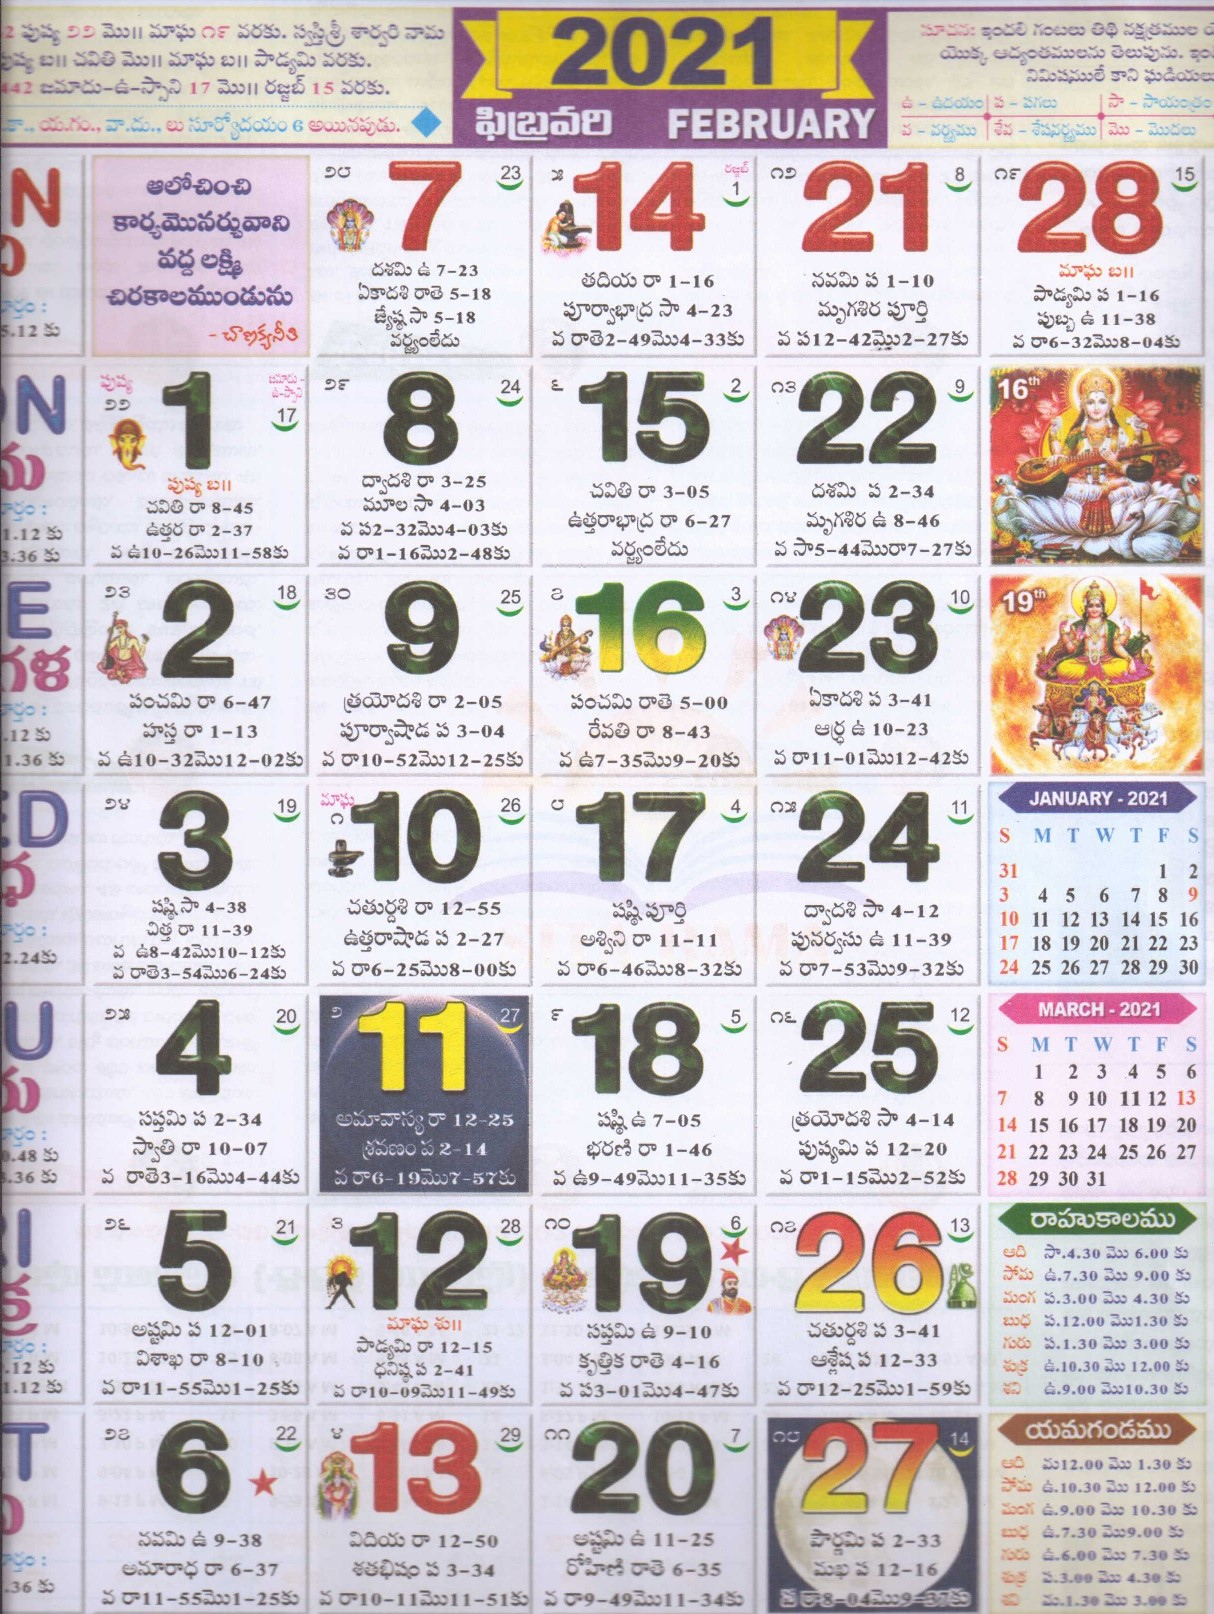 Telugu Calendar 2021 | Monthly Telugu Calendar 2021 November 2021 Calendar Hindi